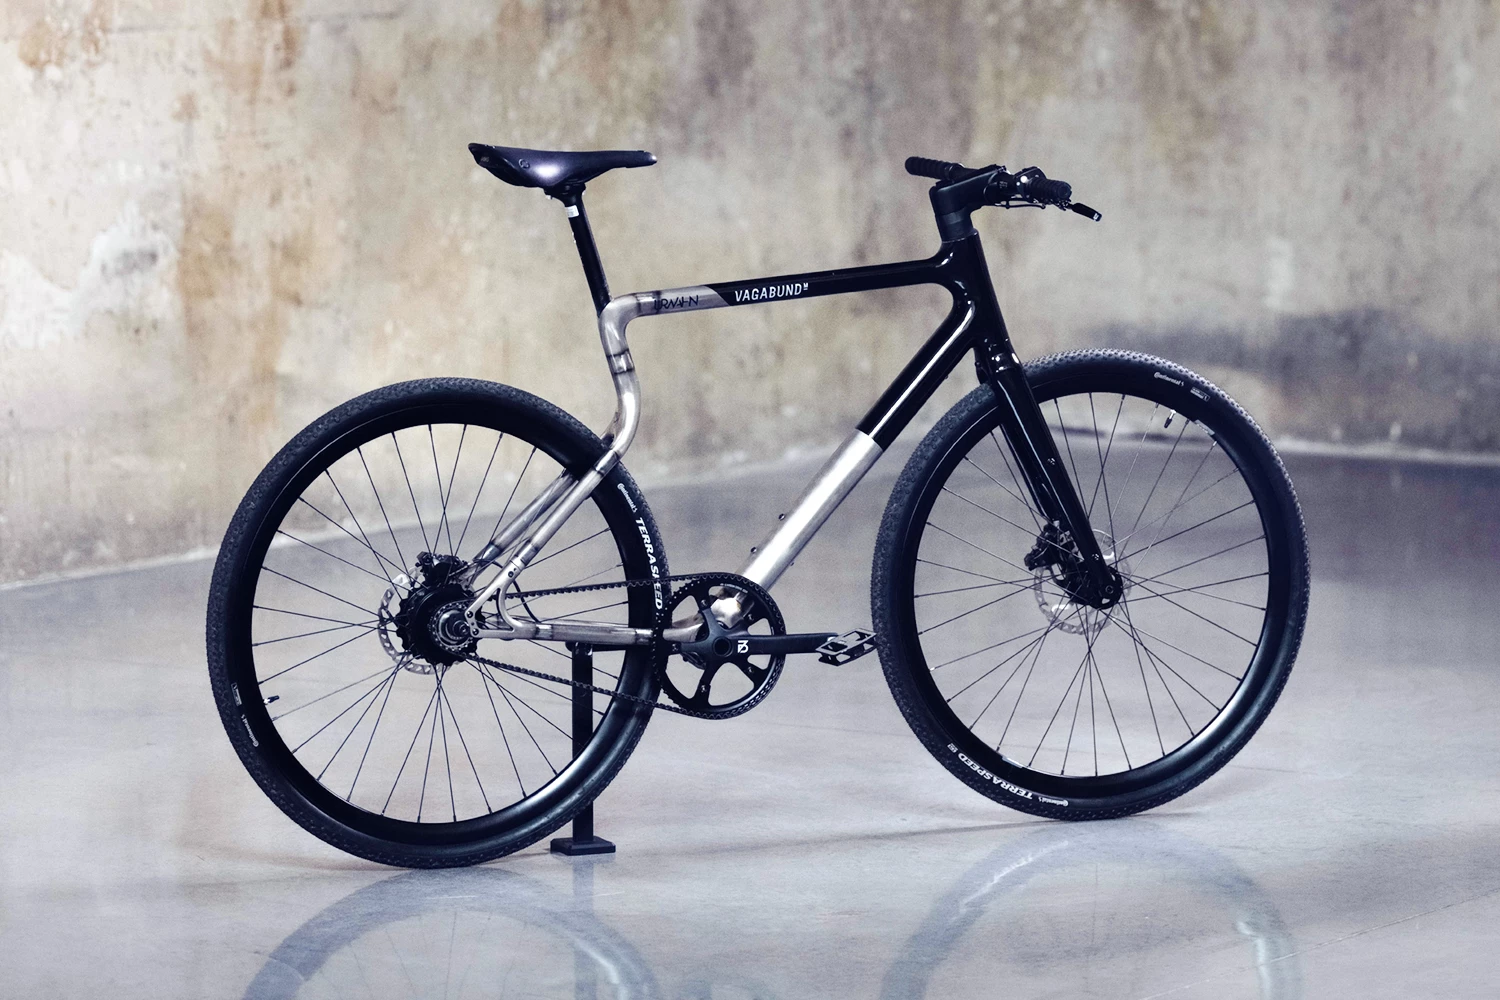 Urban E-Bike Stadtfuchs Vagabund Edition mit zweifarbigen Rahmen in Schwarz-Grau stehend in einer Industriehalle